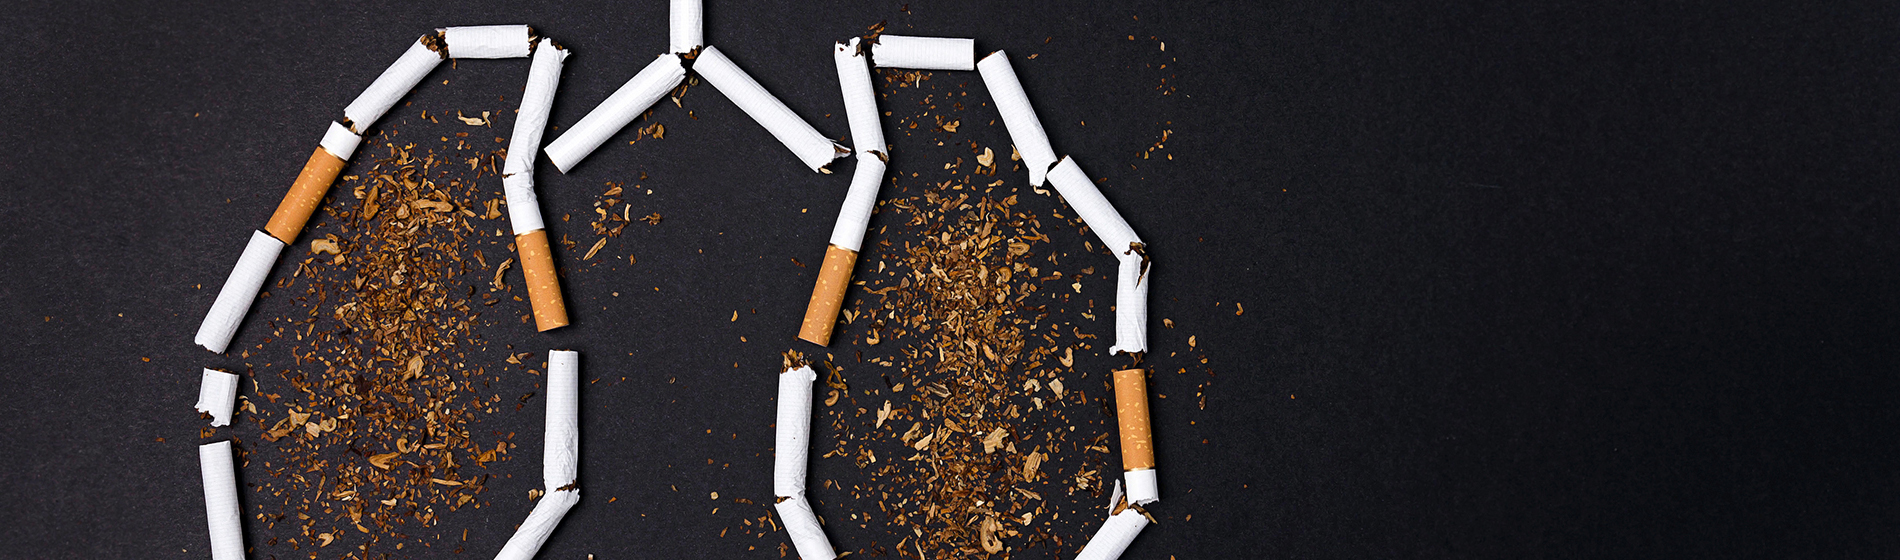 Bracelet anti tabac solution naturelle pour arrêter de fumer